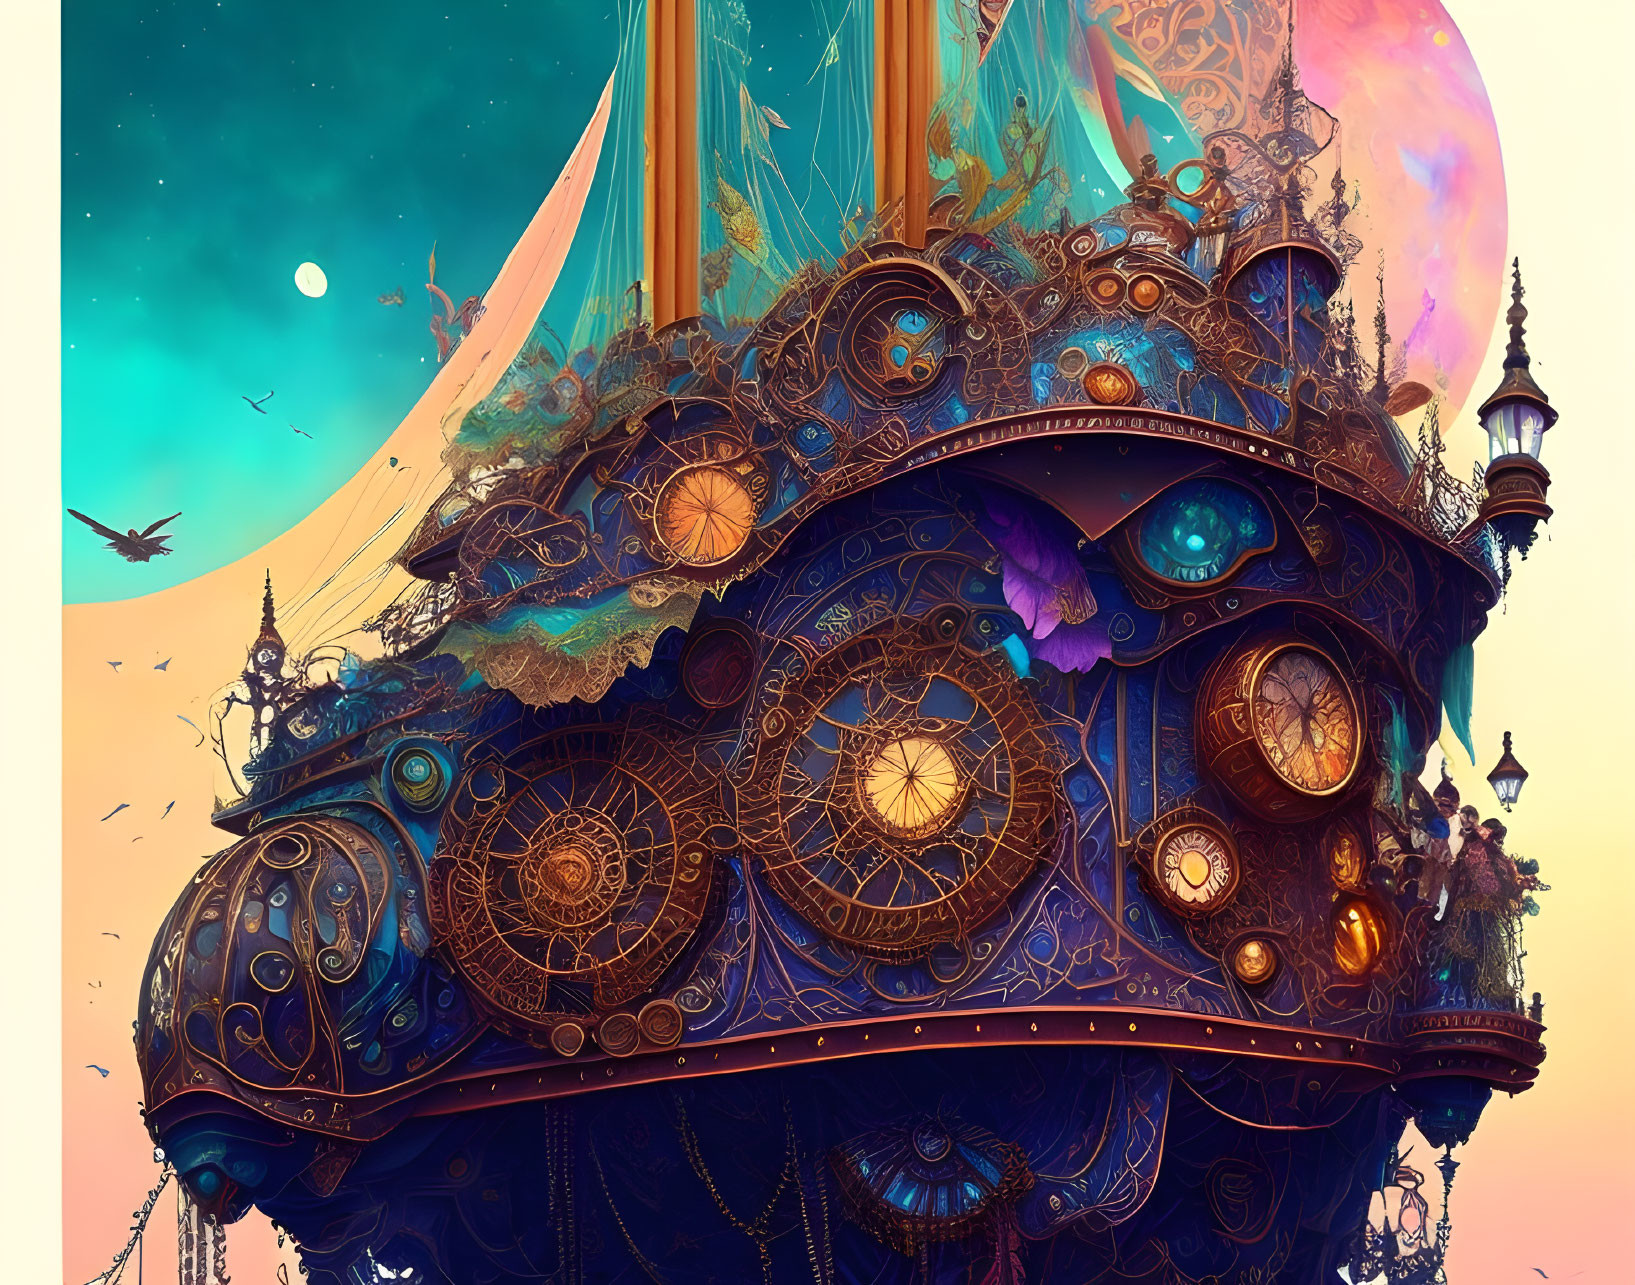 Ornate Clockwork Fantasy Flying Ship Over Sunset Sky